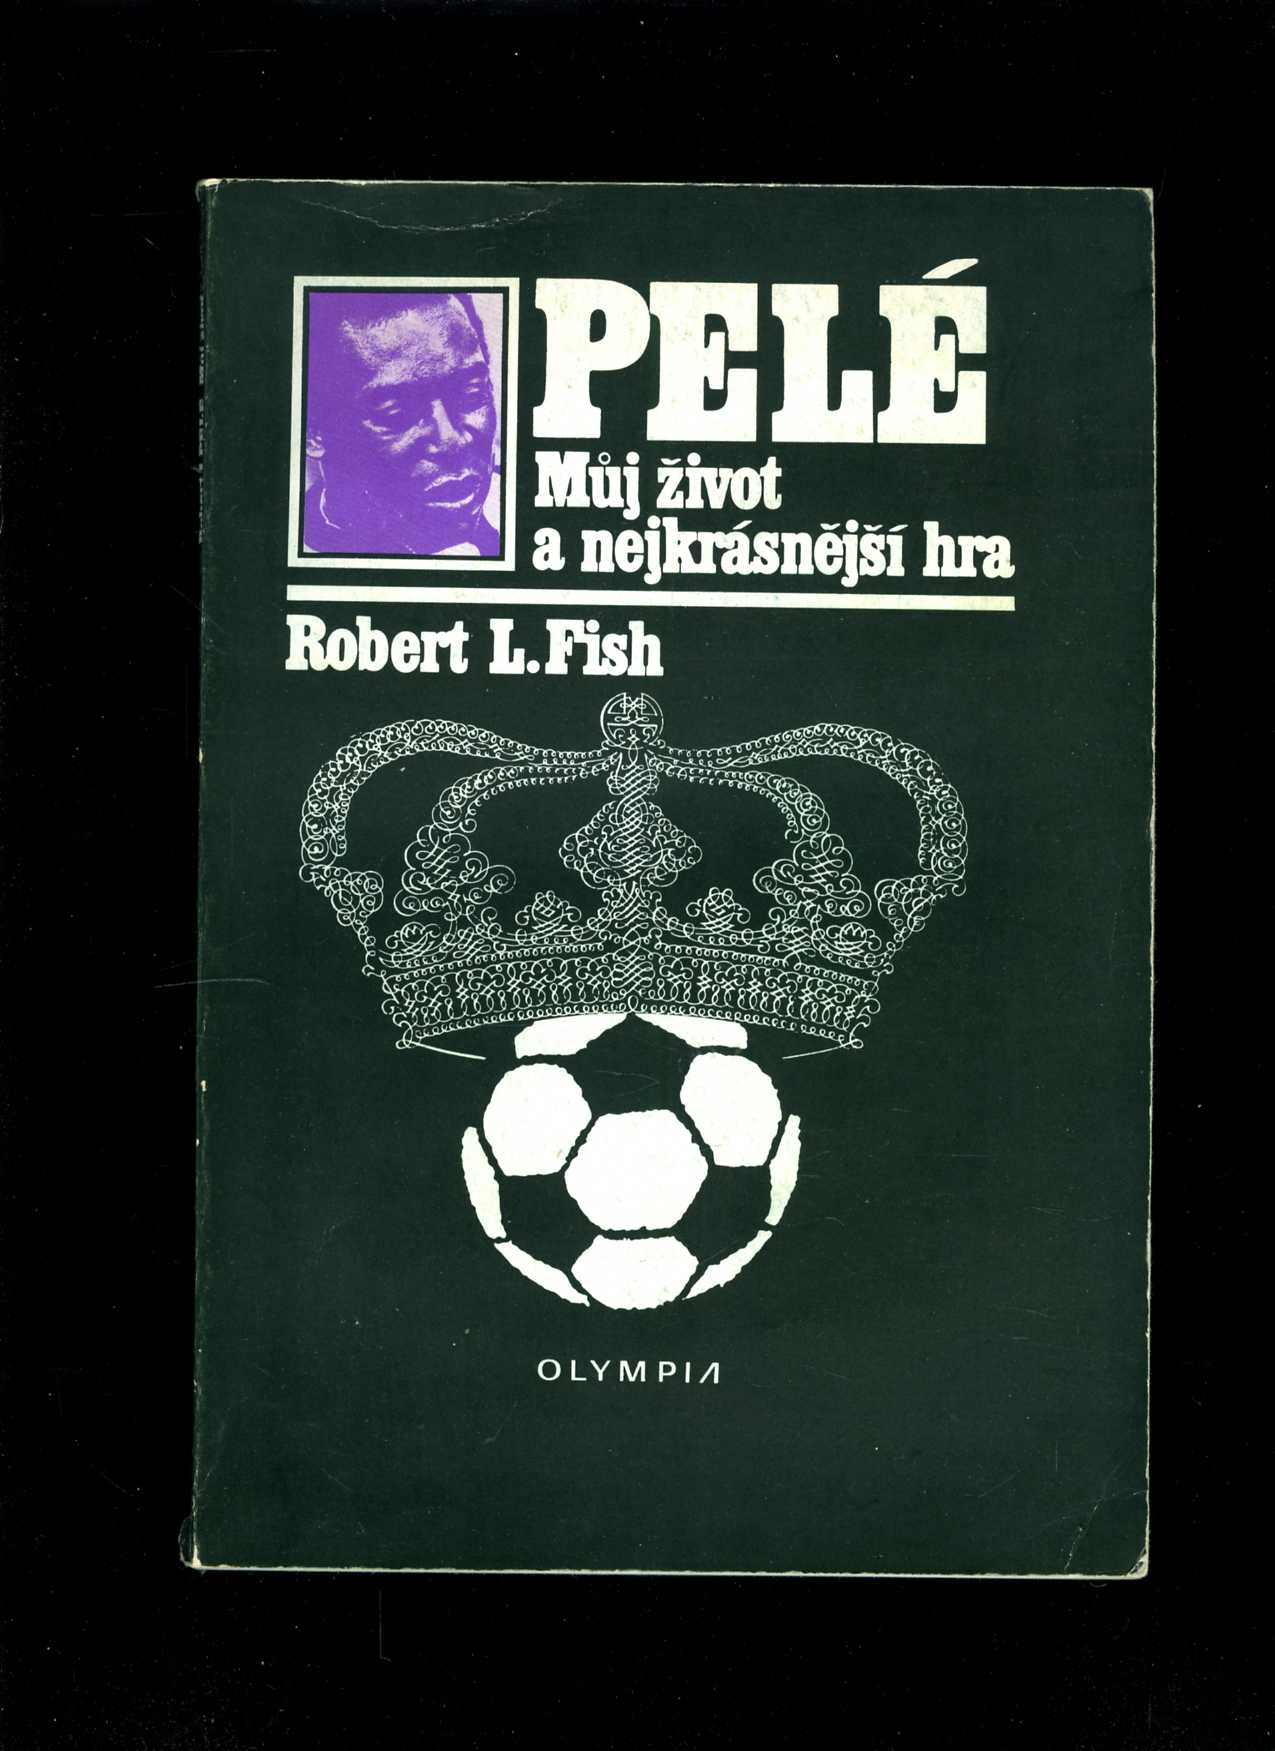 Pelé (Robert Lloyd Fish)